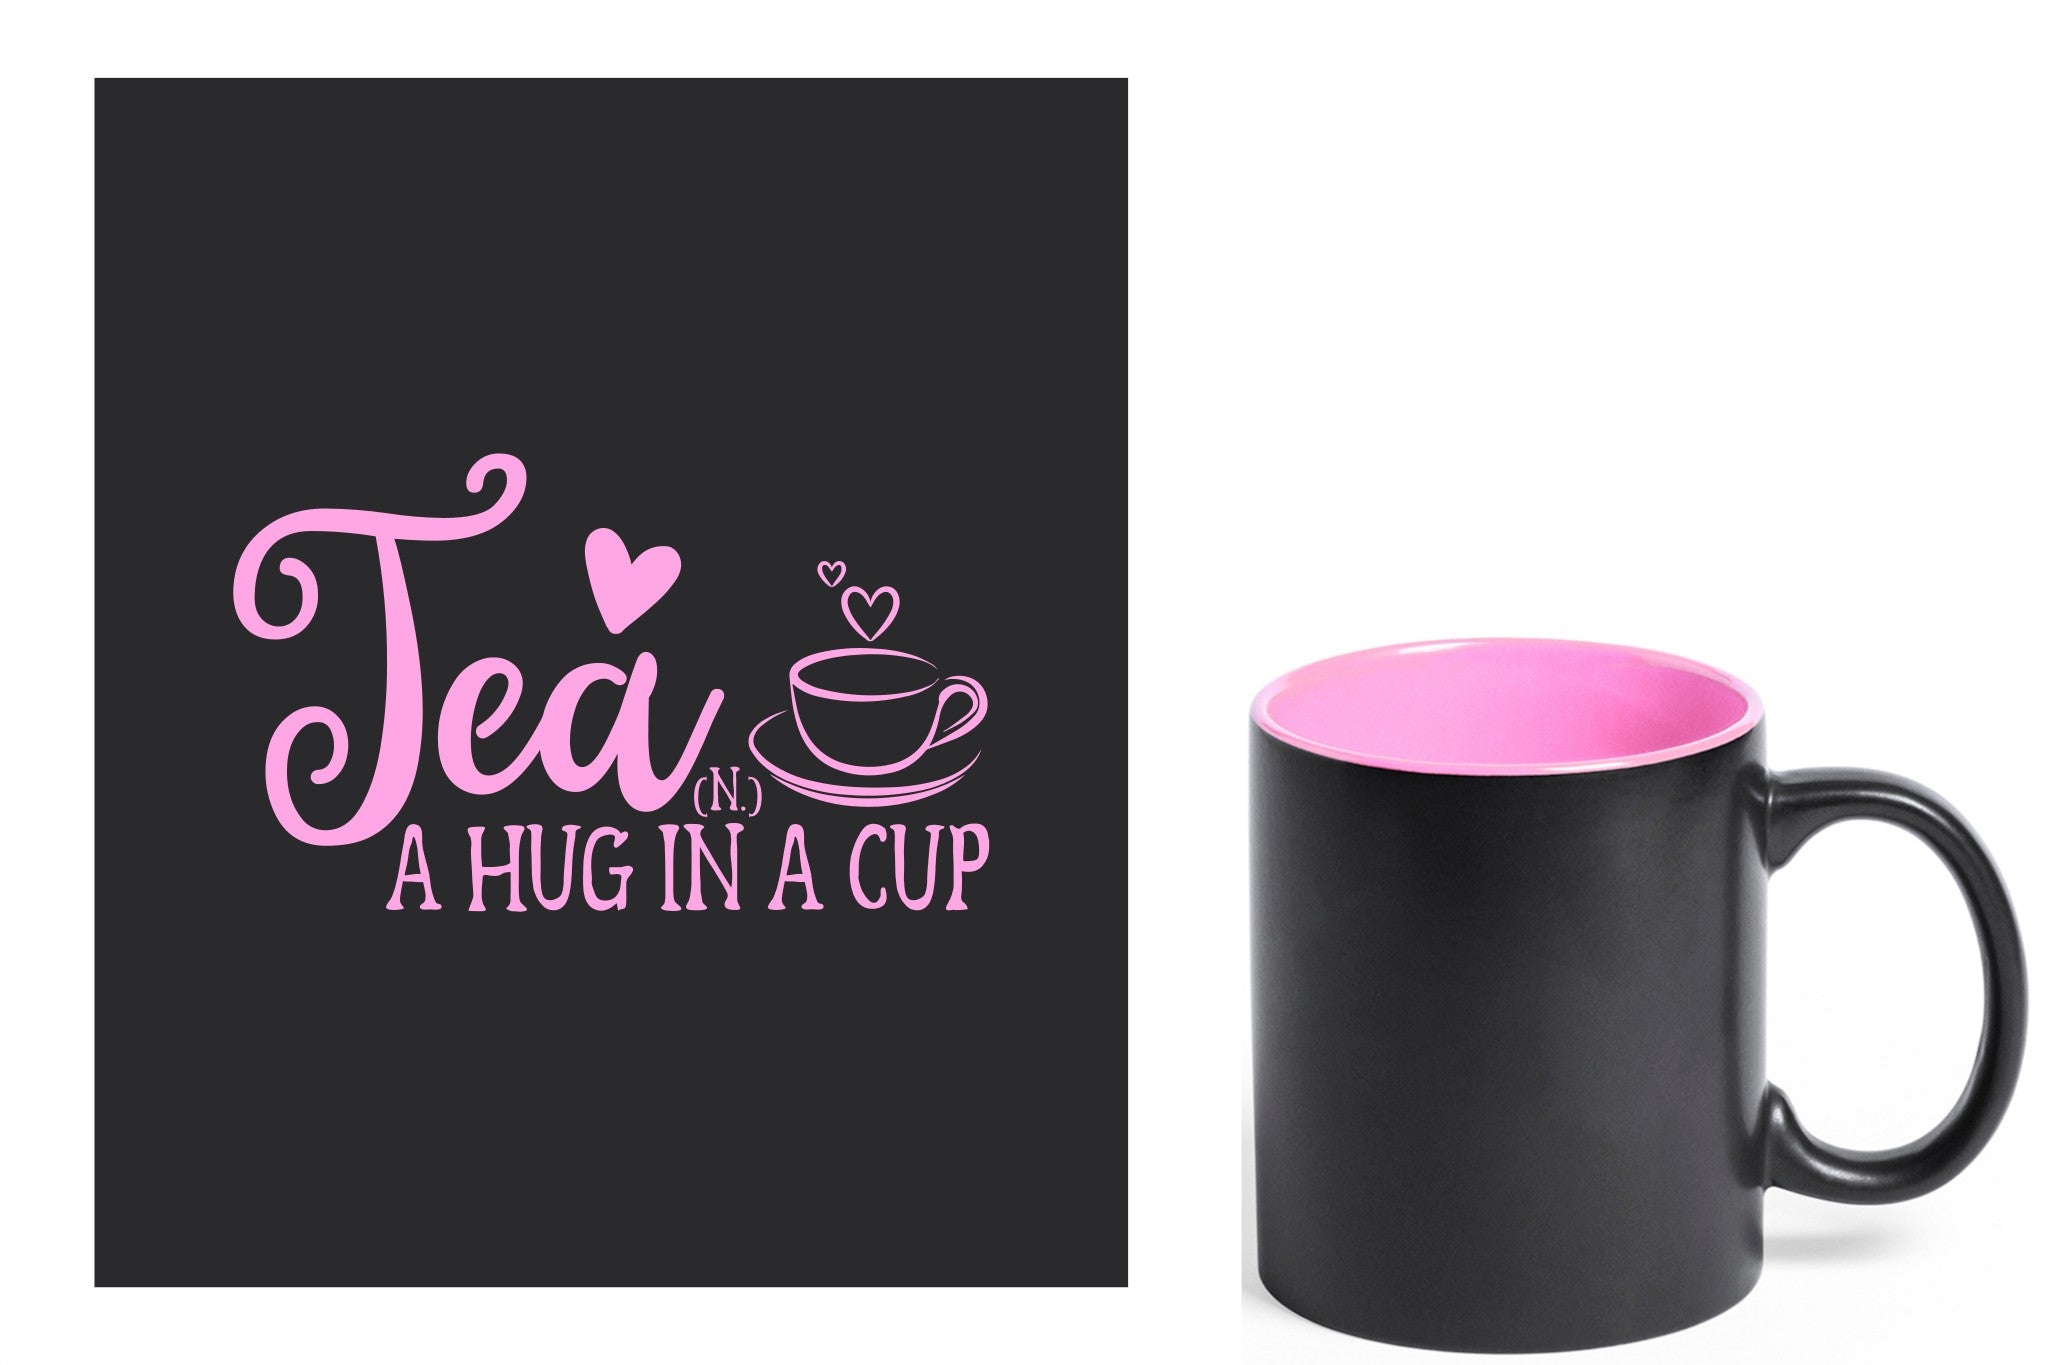 zwarte keramische mok met roze gravure  'Tea and a hug in a cup'.